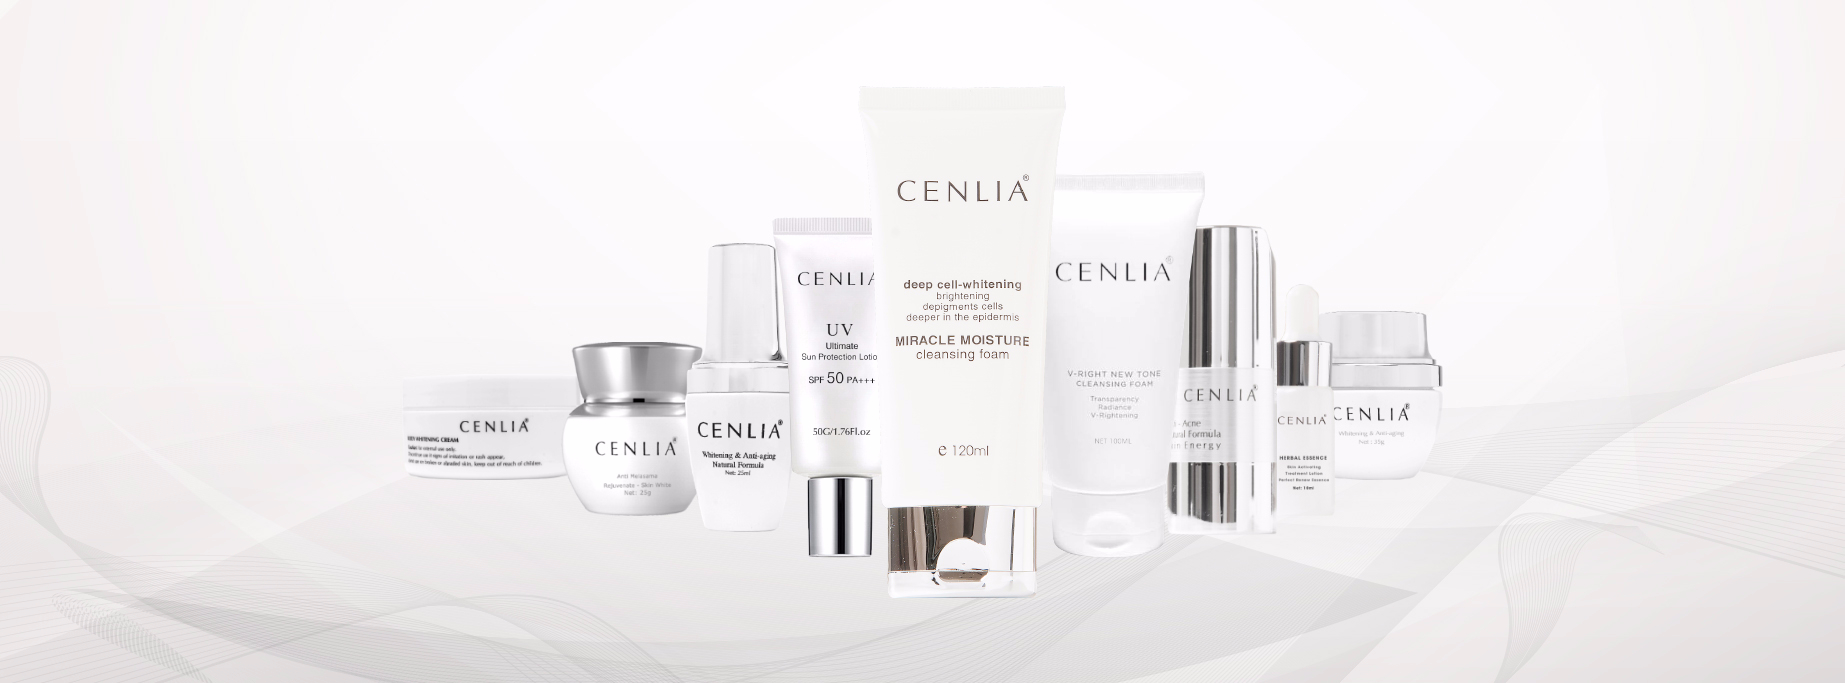 Những sản phẩm chính của thương hiệu CENLIA